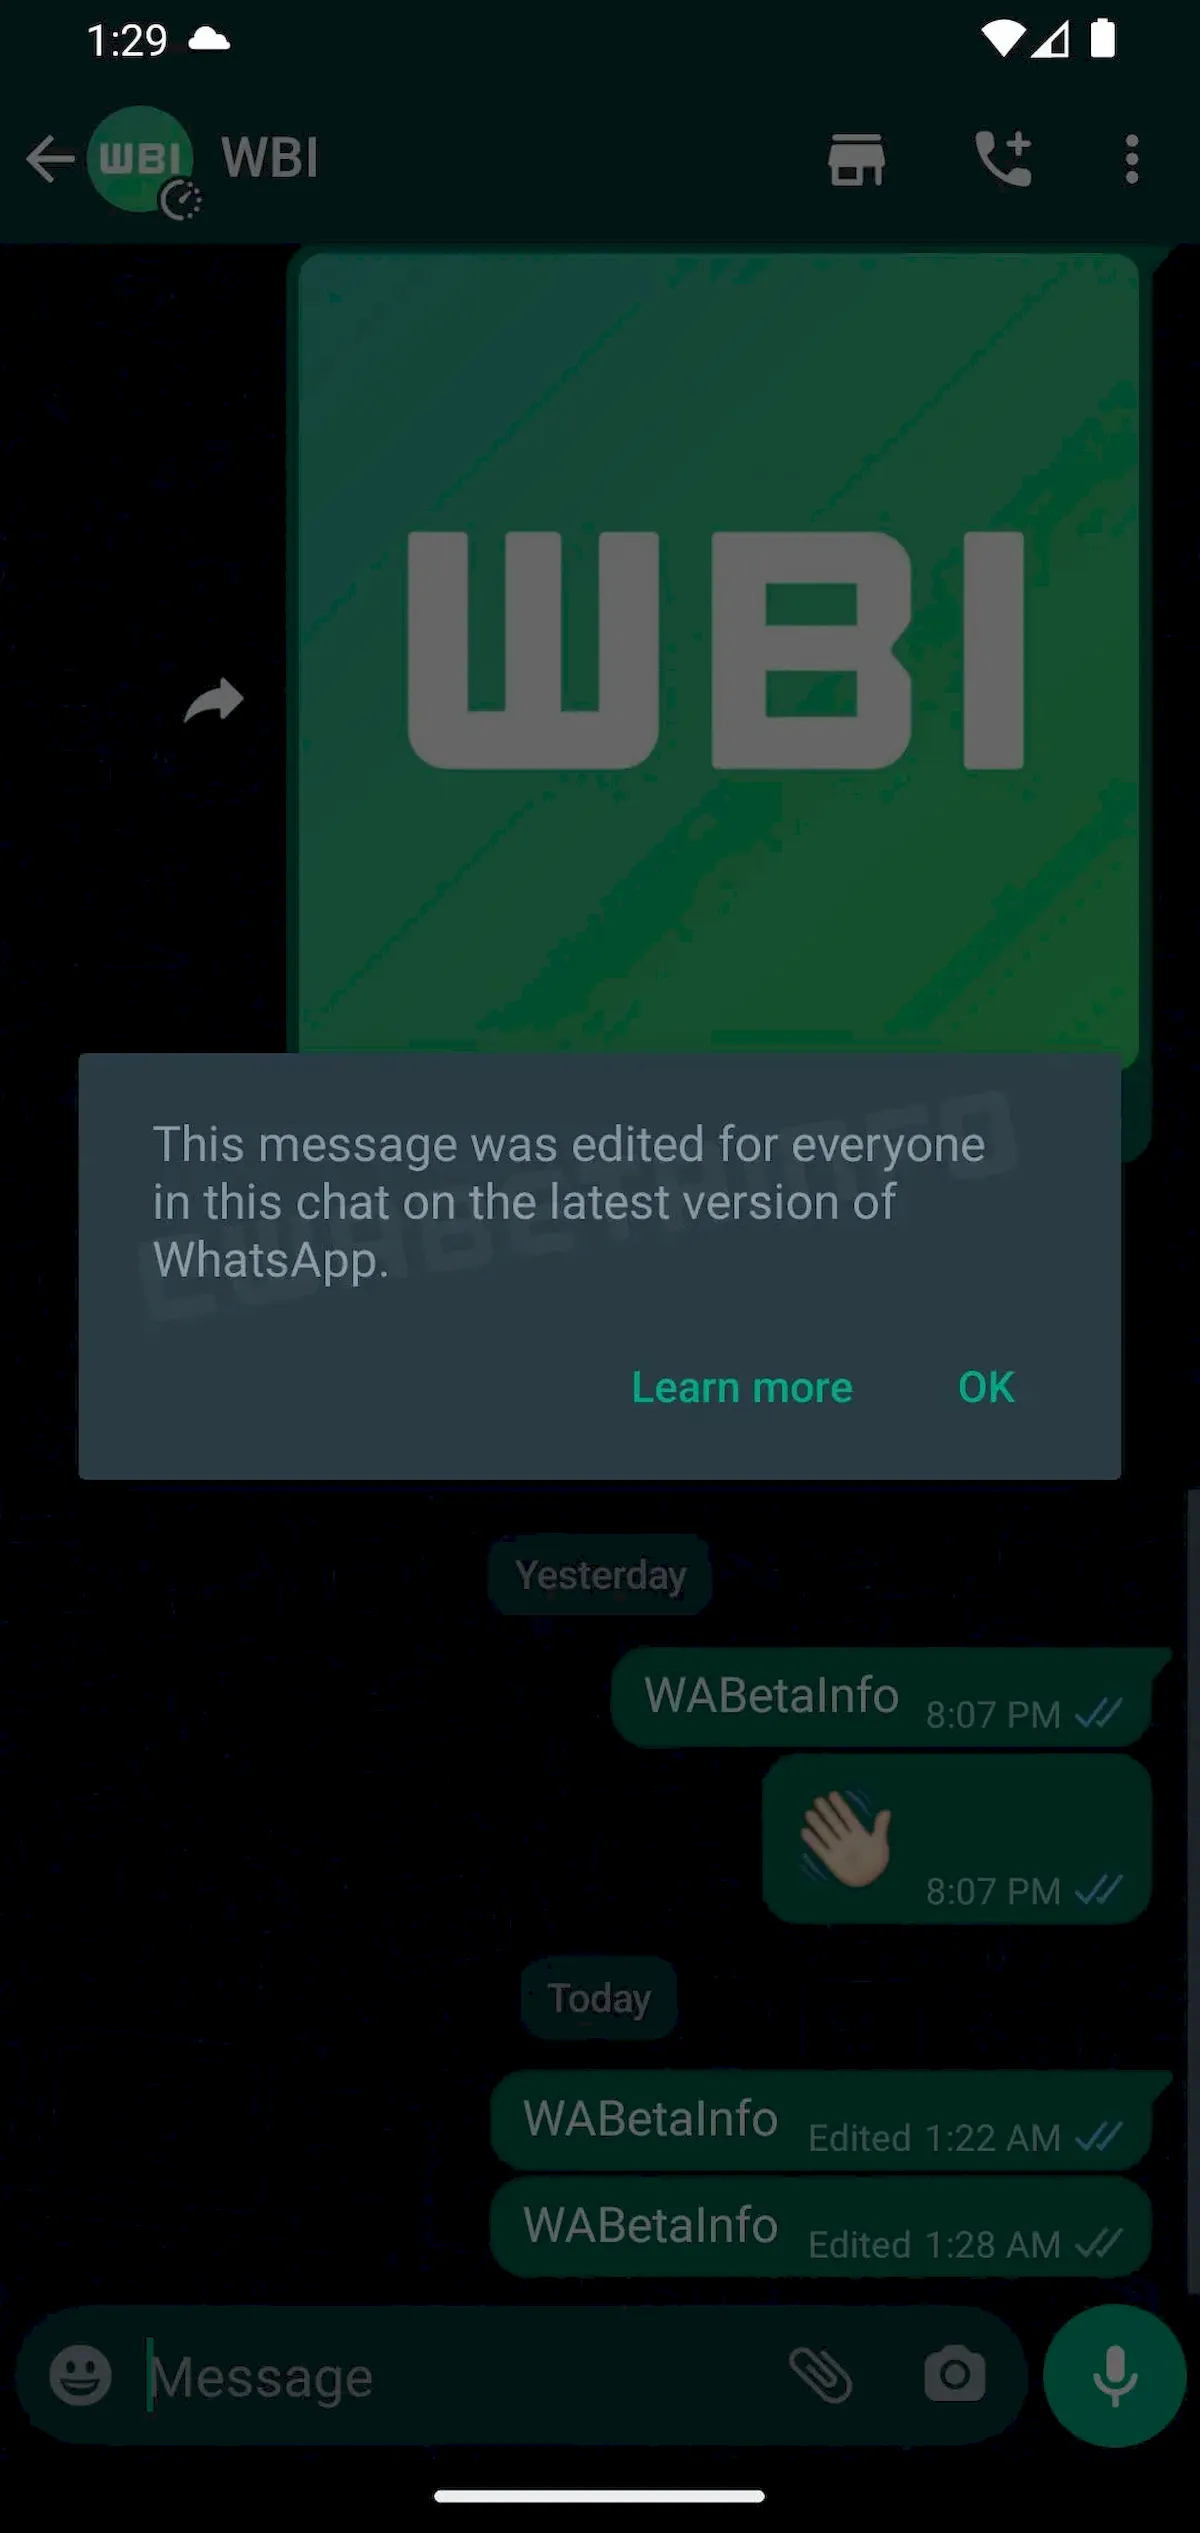 Usuários poderão editar as mensagens enviadas no WhatsApp